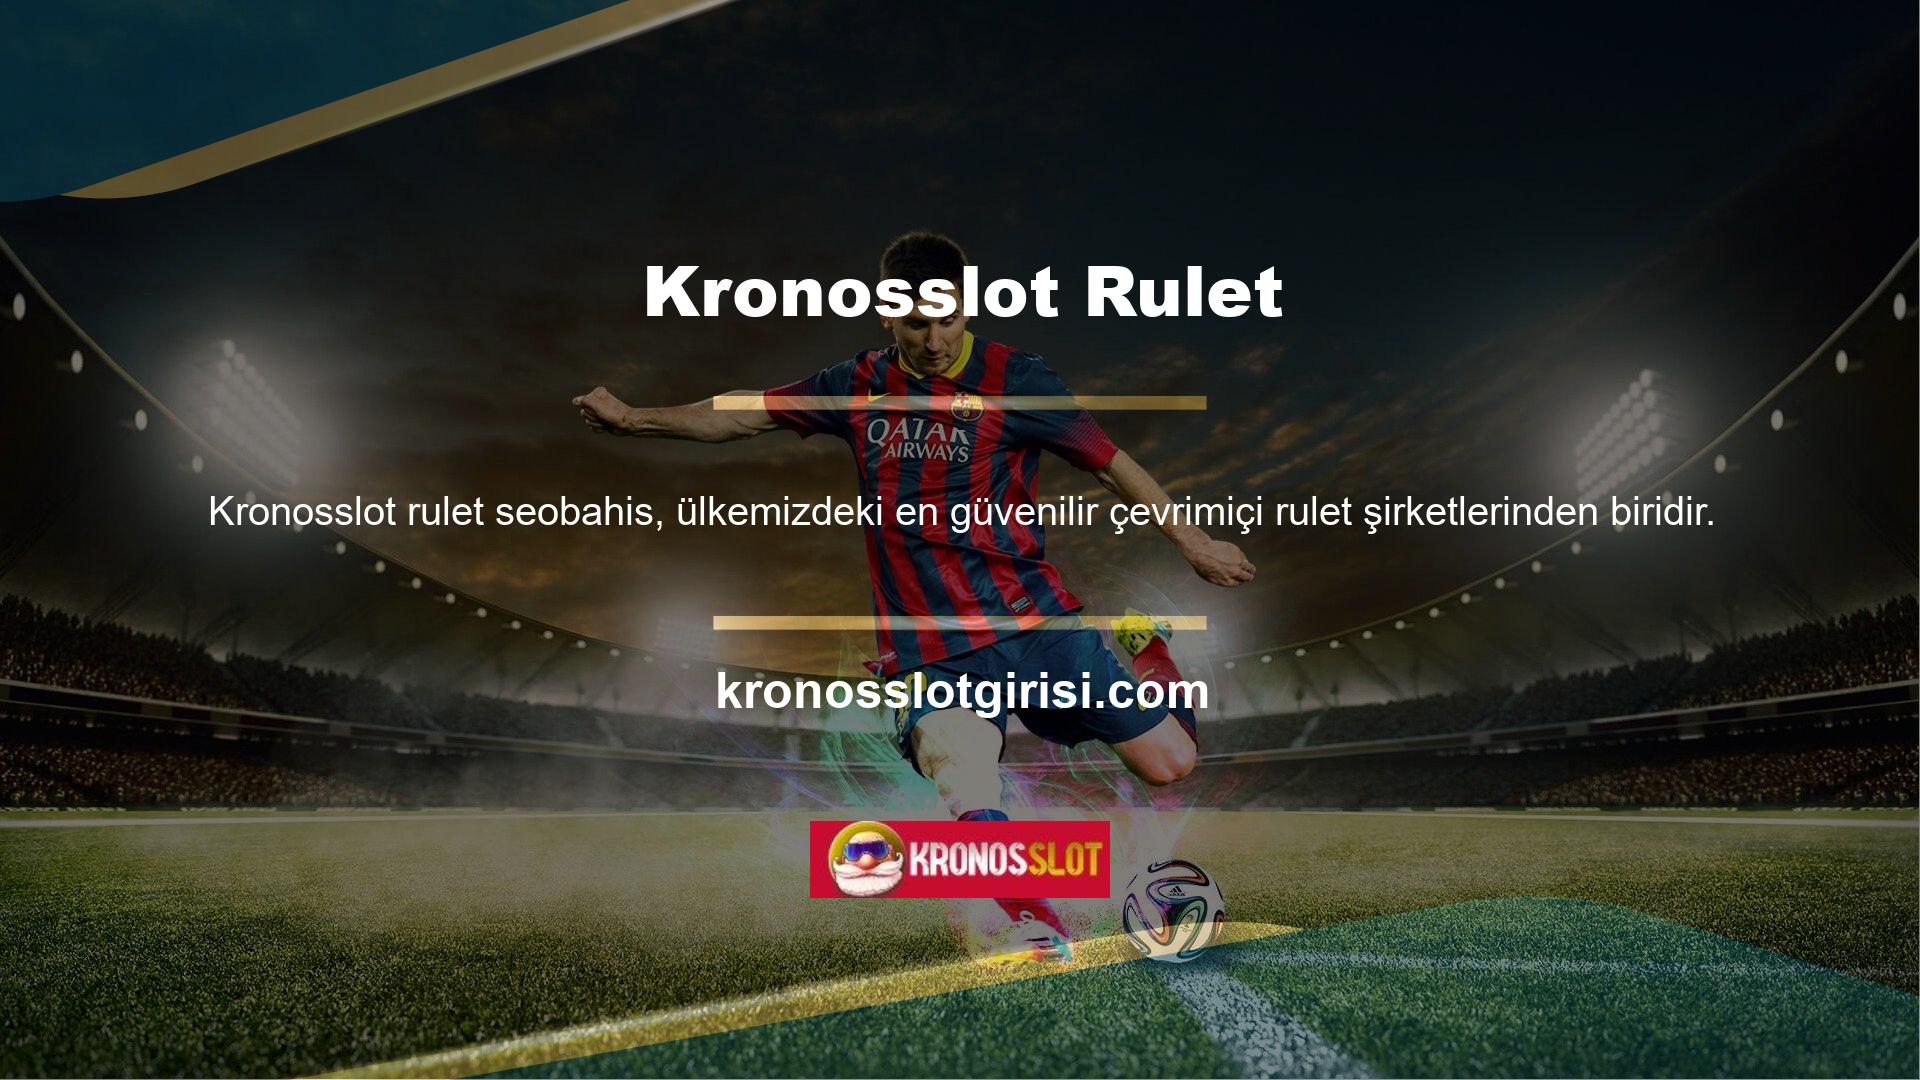 Kronosslot, Türkiye’deki tüm rulet oyunlarıyla ilgilenen bahis camiasını seven ve çeken kuruluşlardan biridir